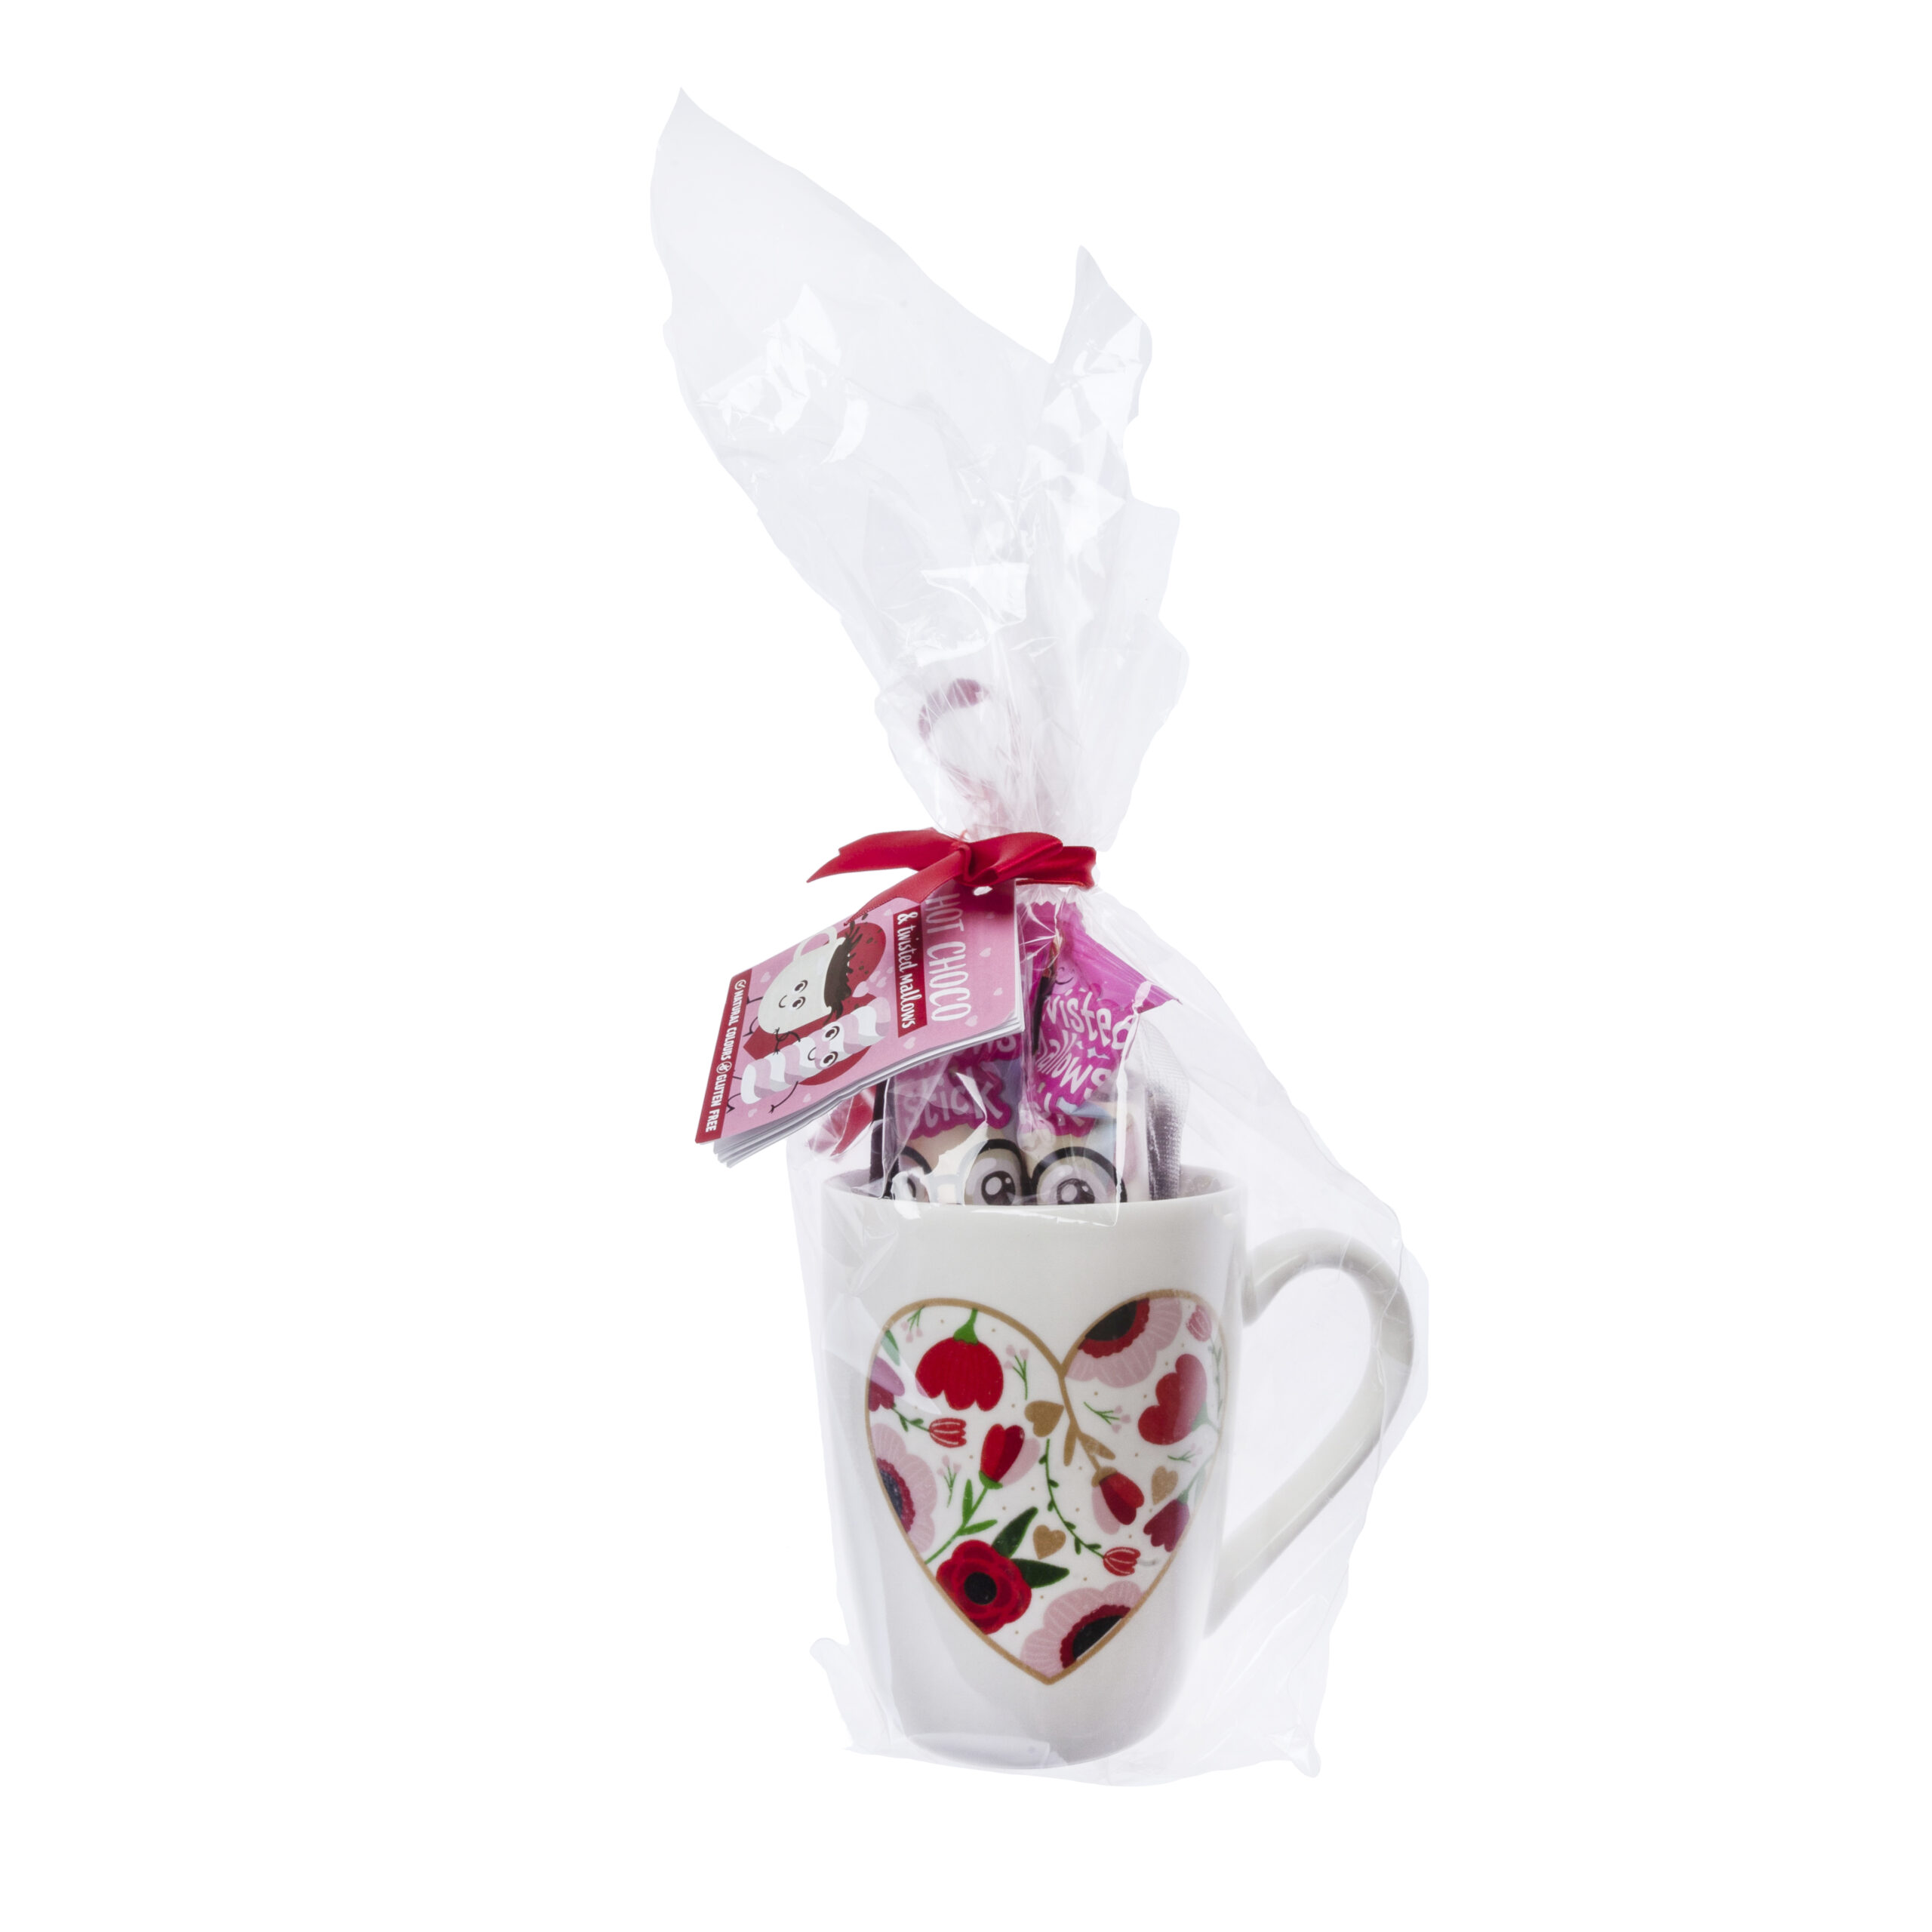 Tazas originales de San Valentín: un regalo barato y romántico